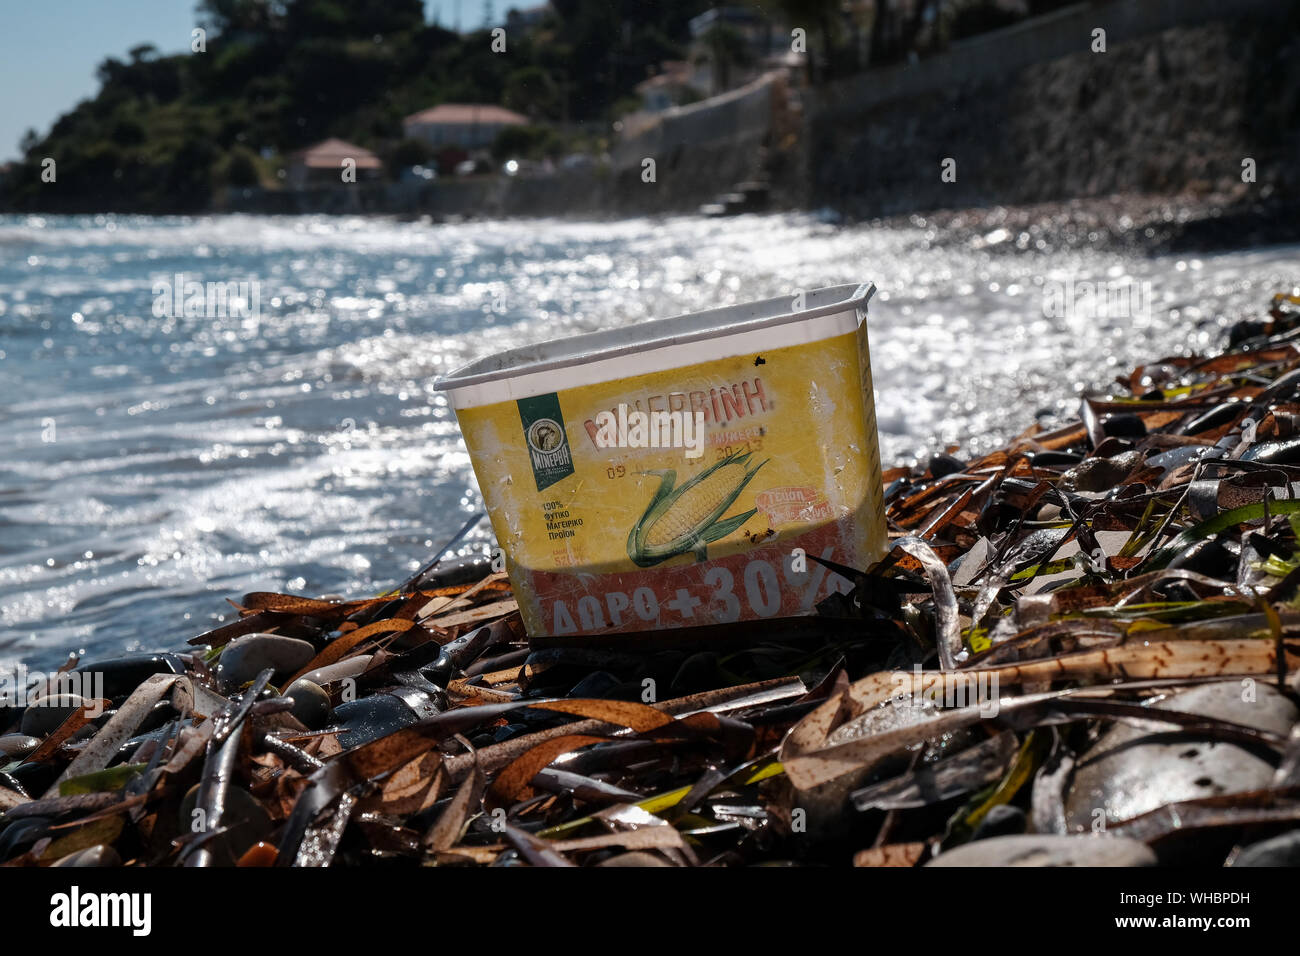 Un contenedor de dulce de plástico desechados en la playa con agua la decoloración y daño ahora añadiendo a la contaminación del océano y daños ambientales. Foto de stock